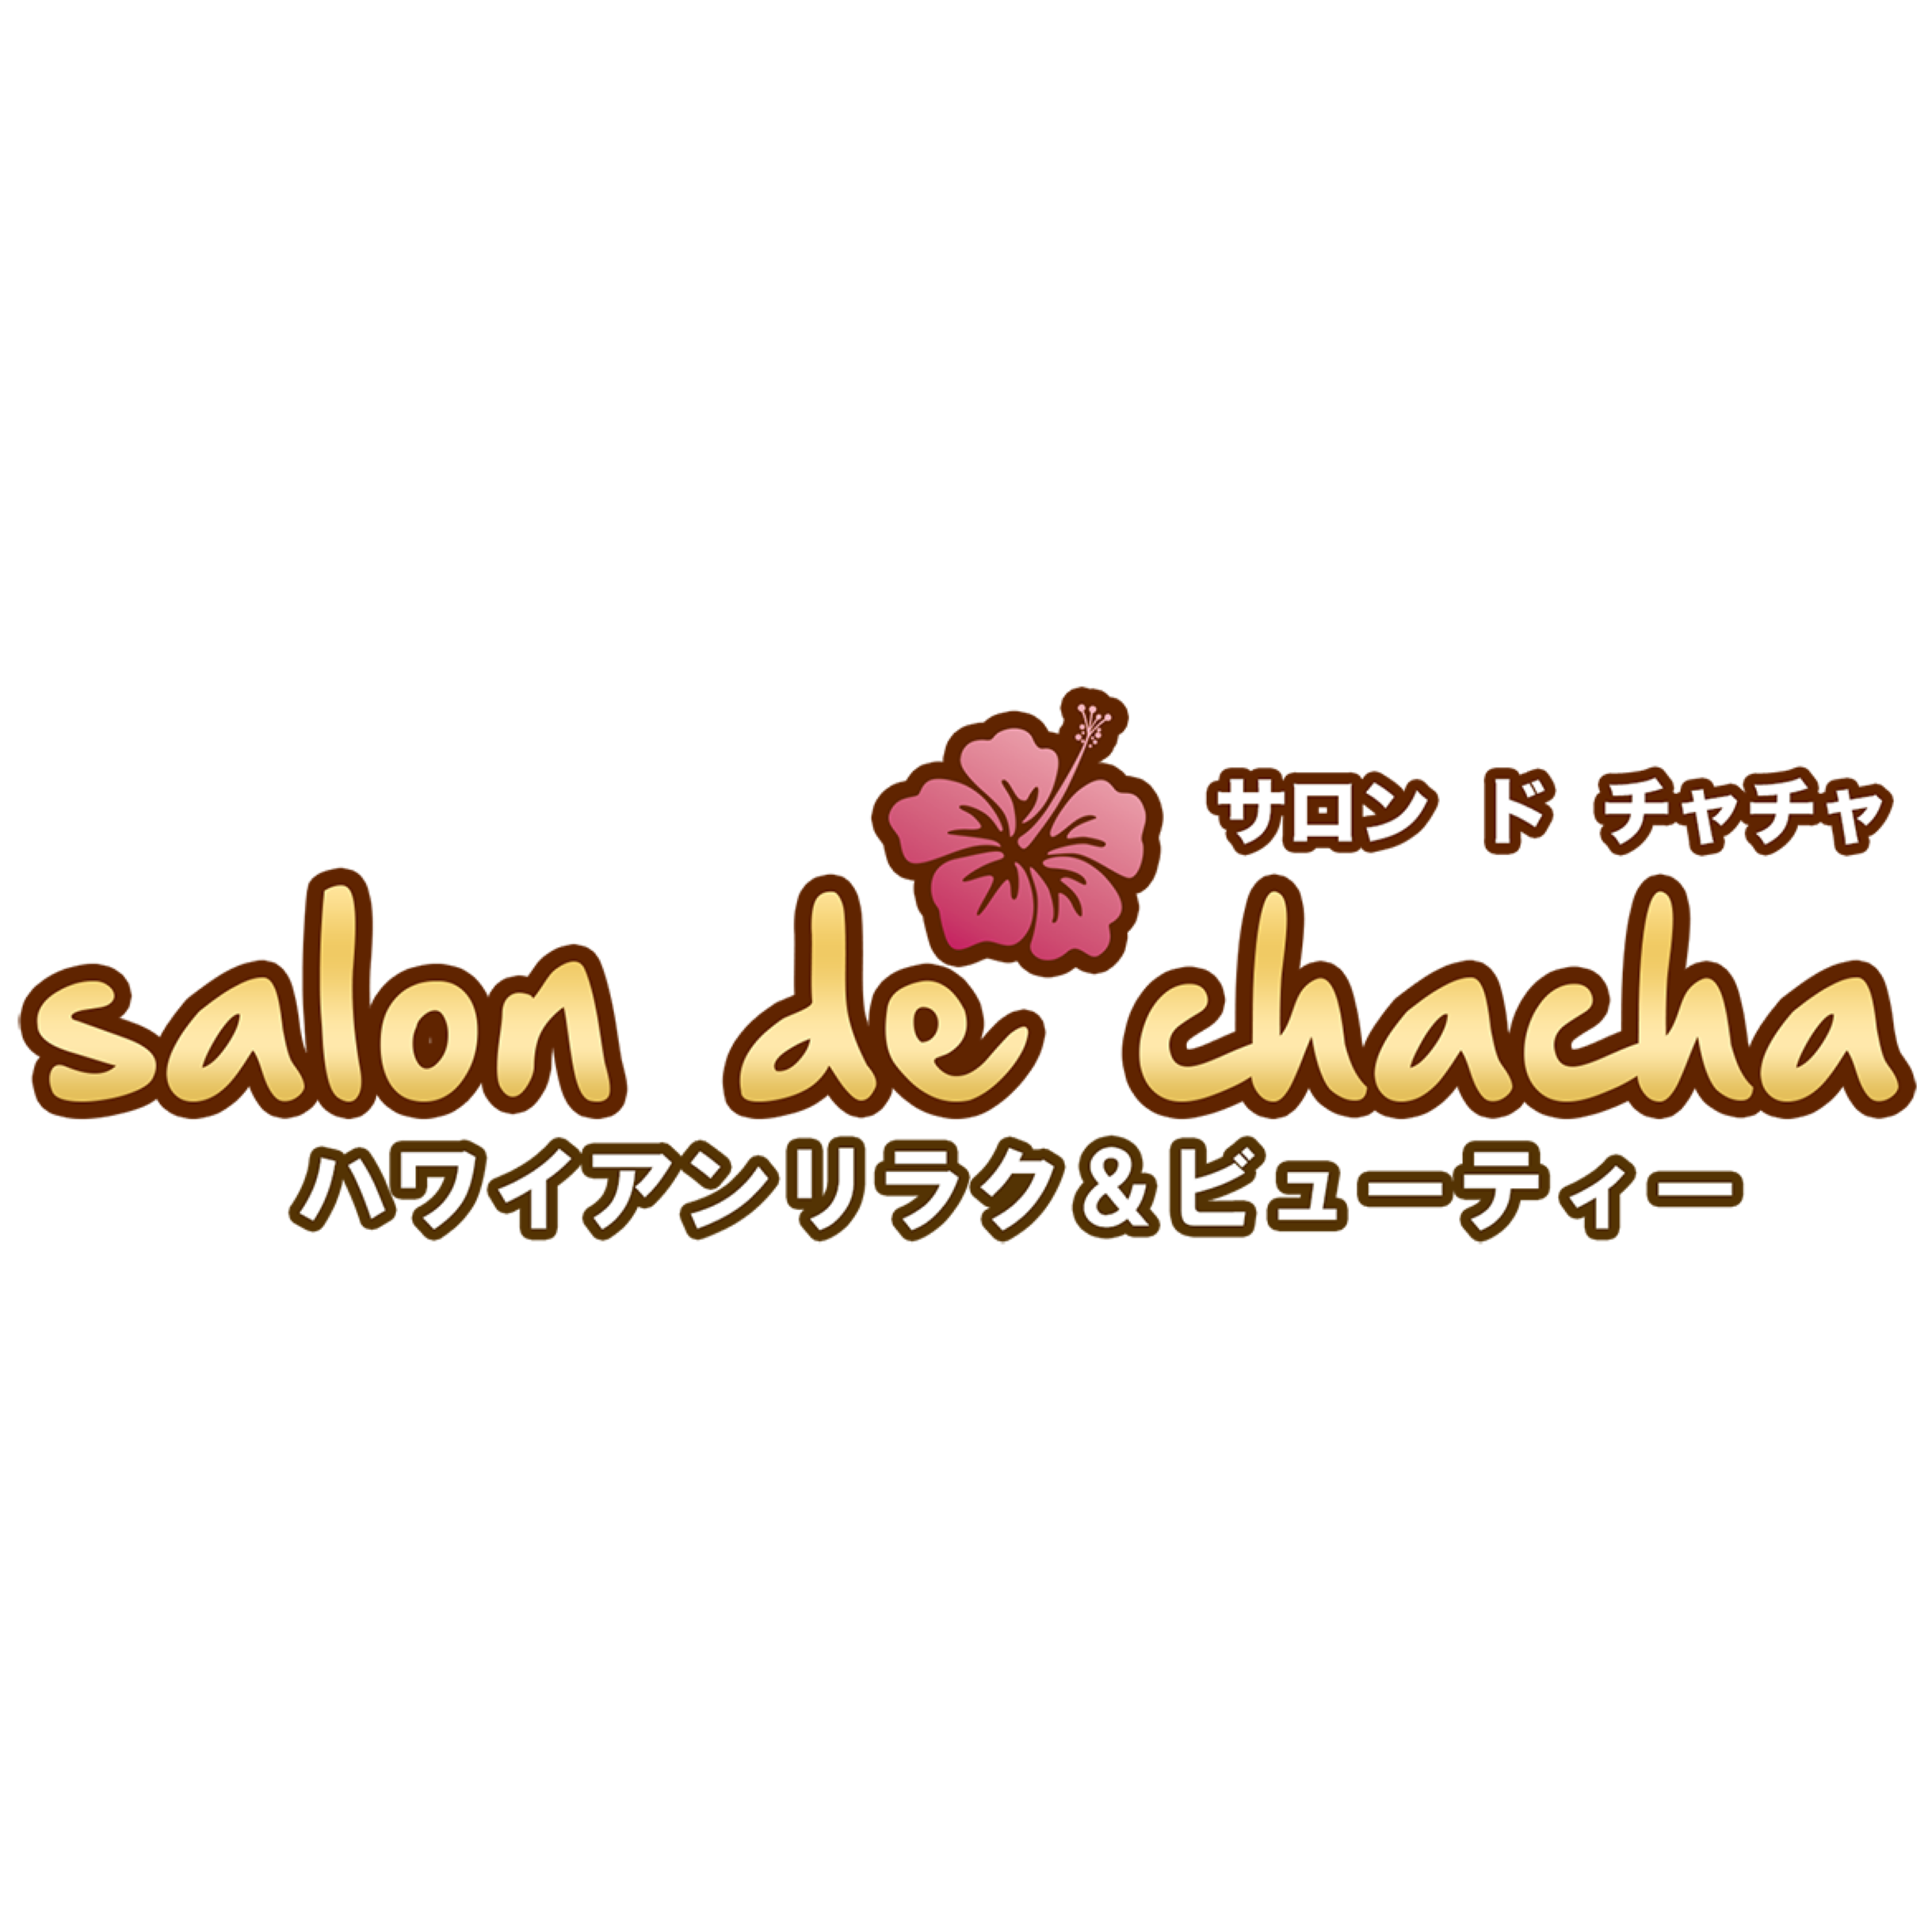 Salon de chacha 大宮マルイ店〜ハワイアンリラク＆ビューティー〜 Logo